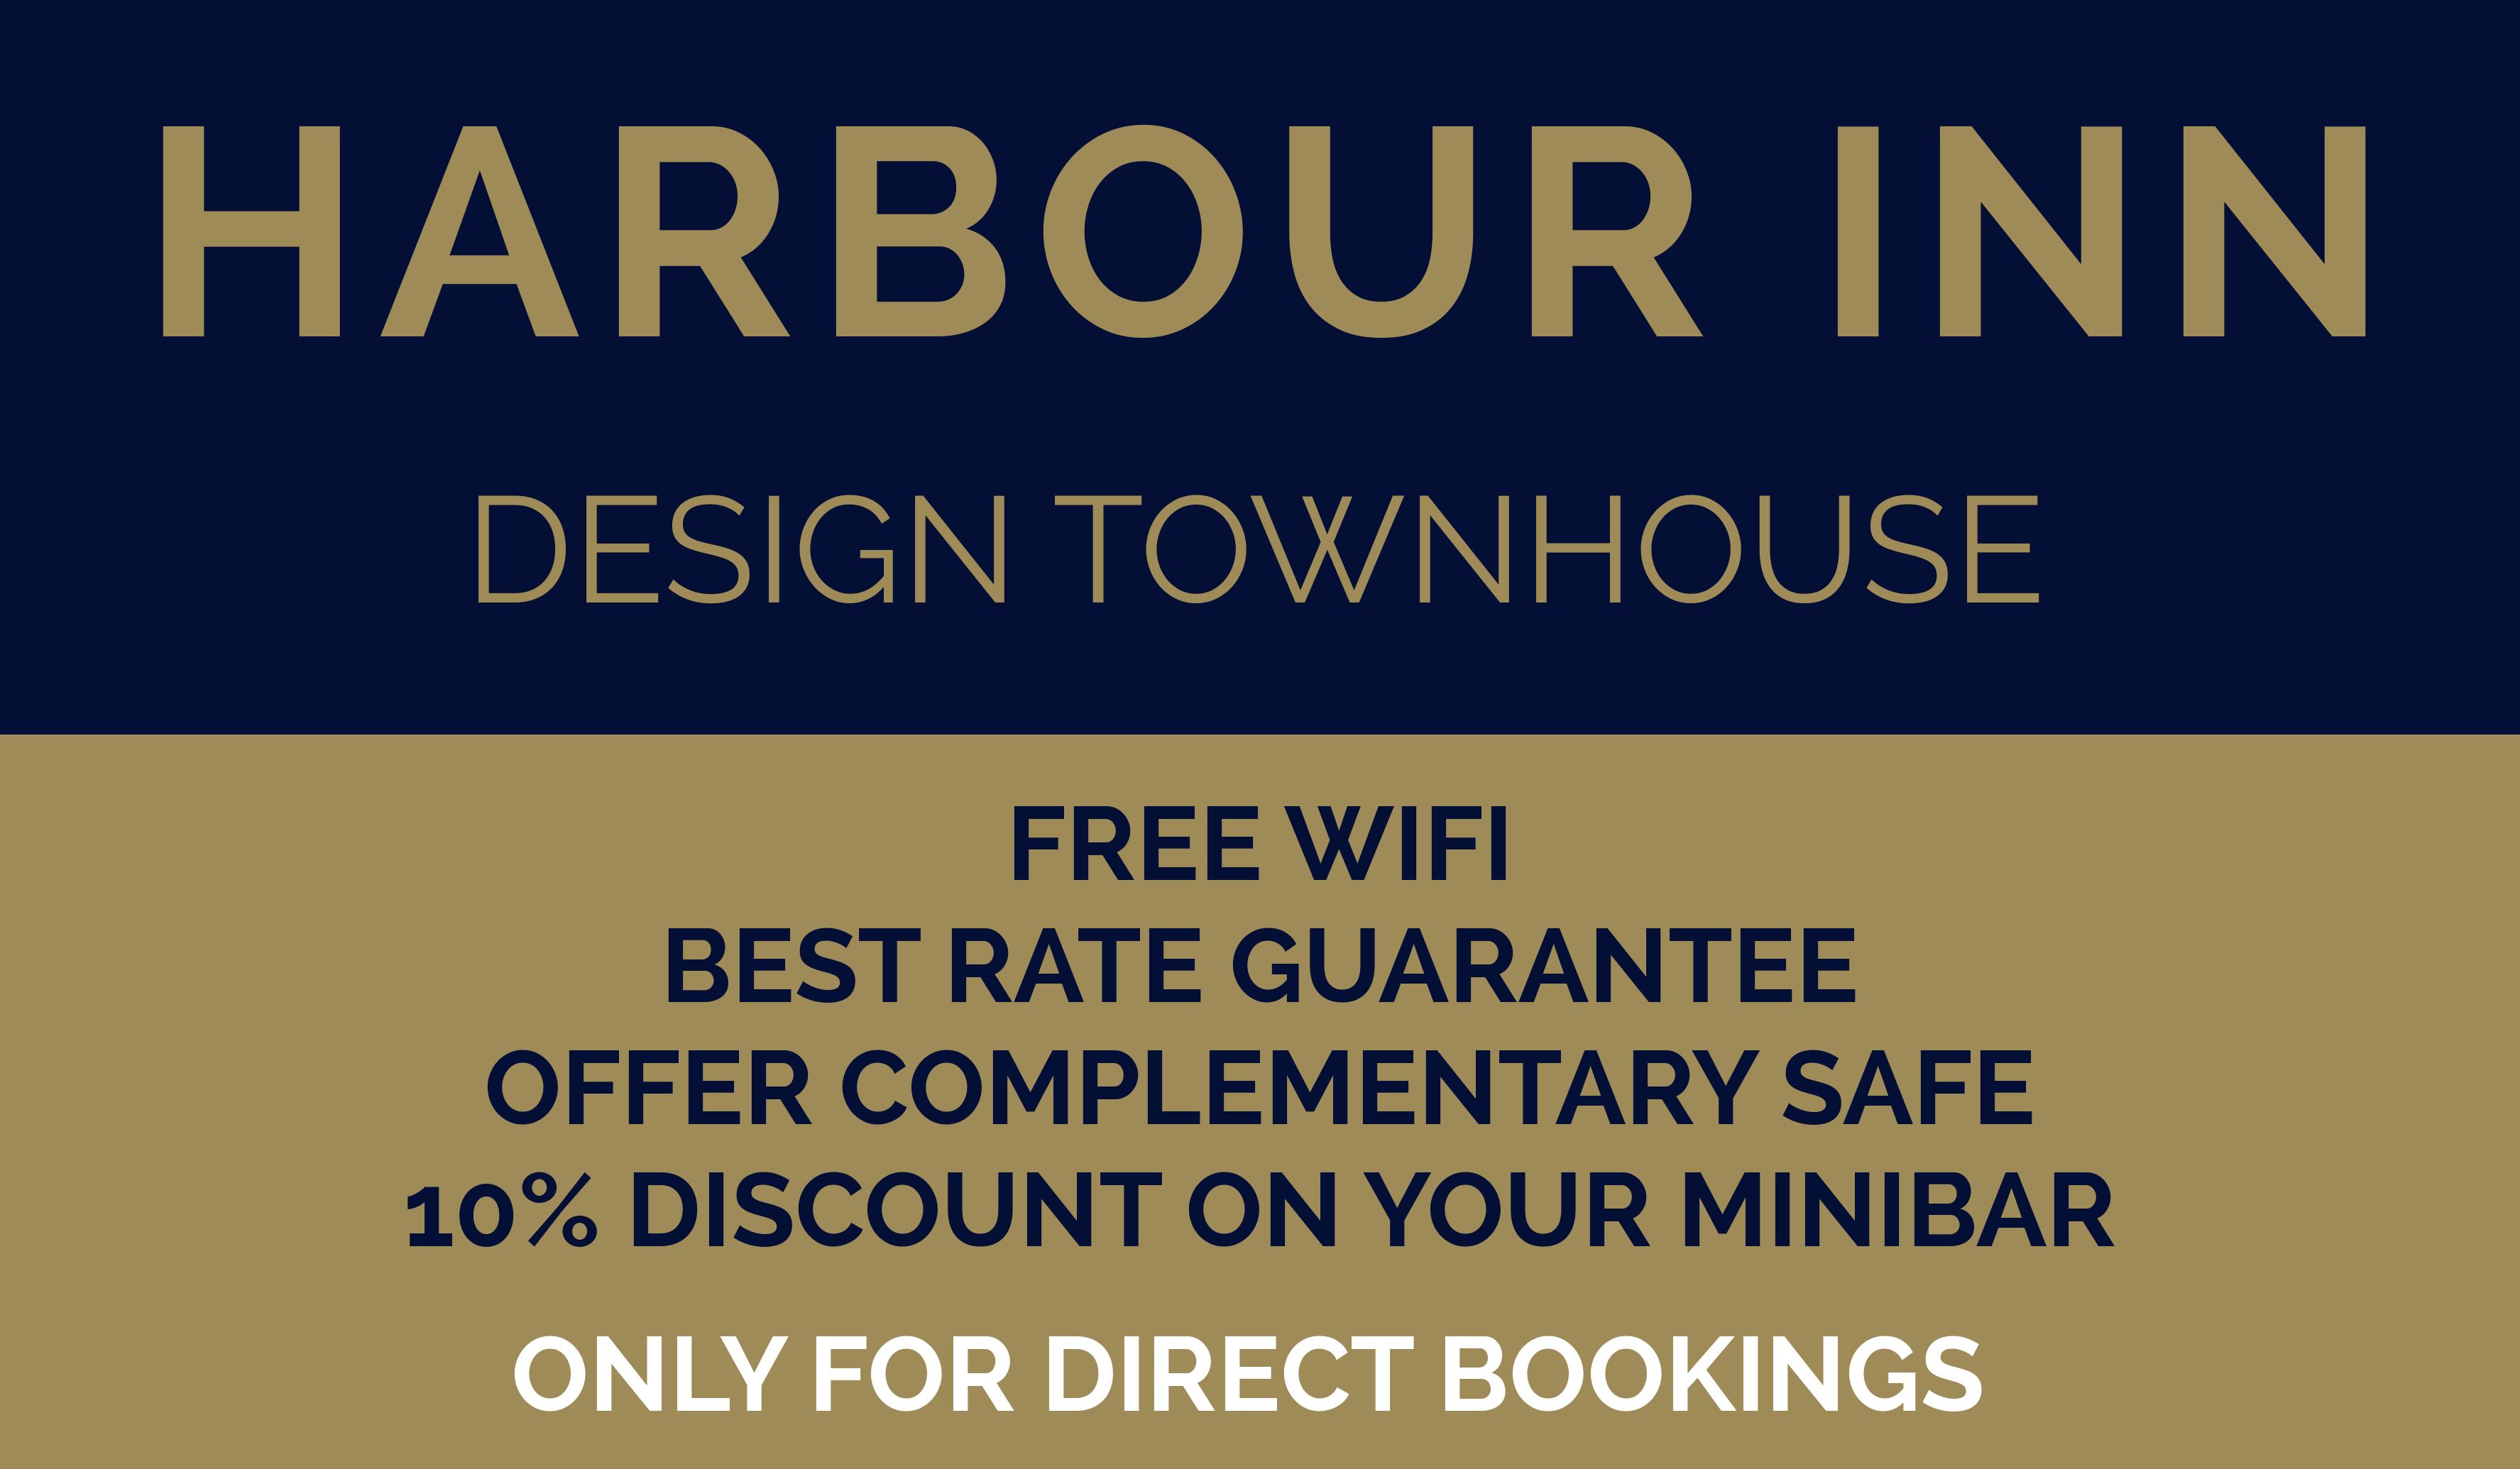 Harbour Inn Design Townhouse